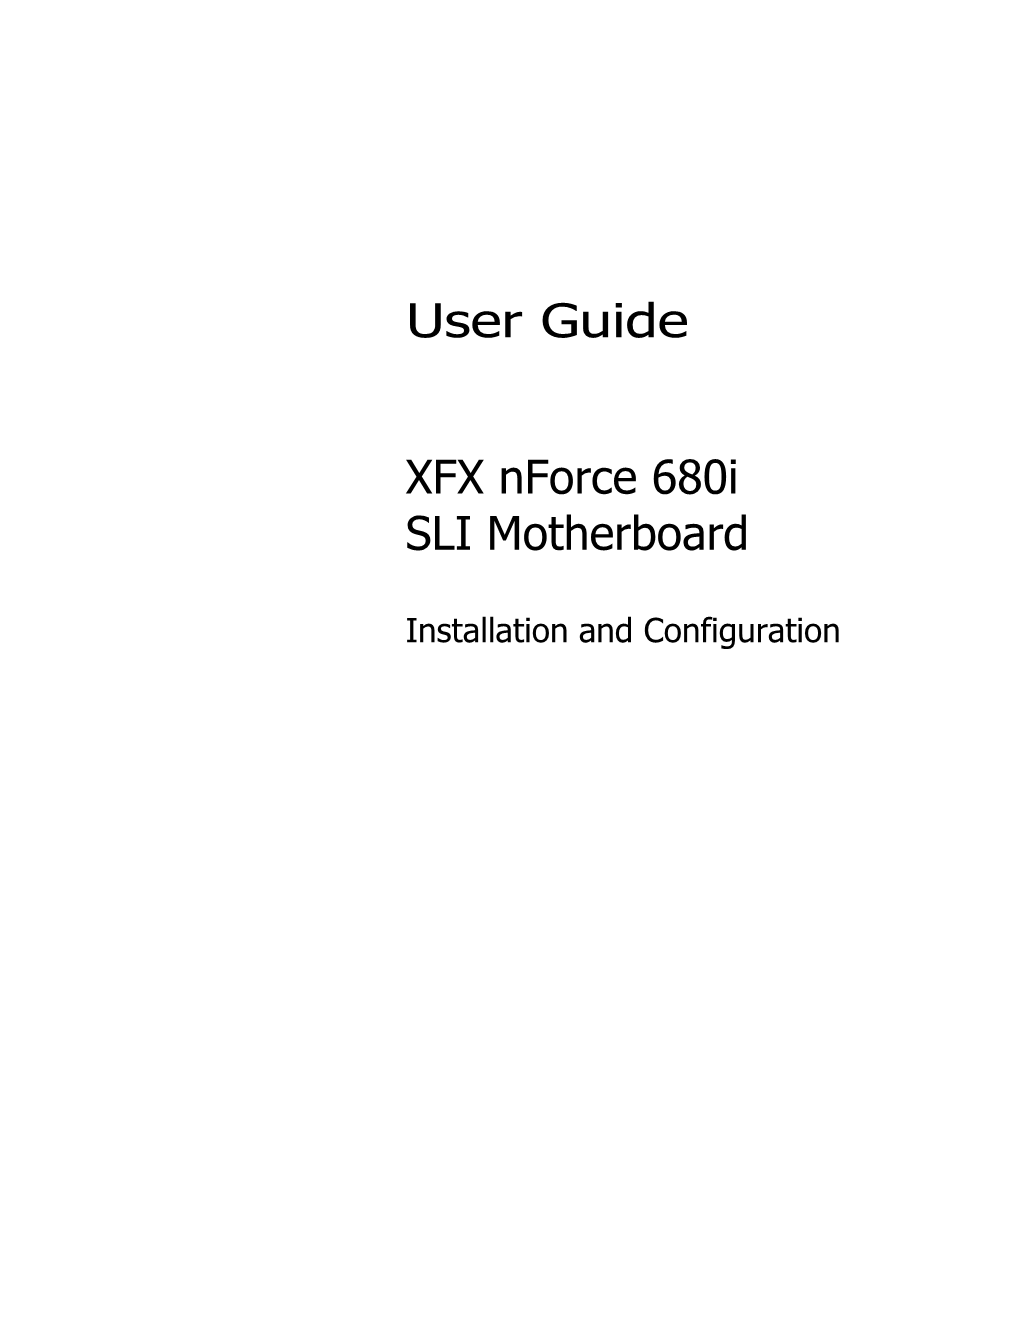 User Guide XFX Nforce 680I SLI Motherboard